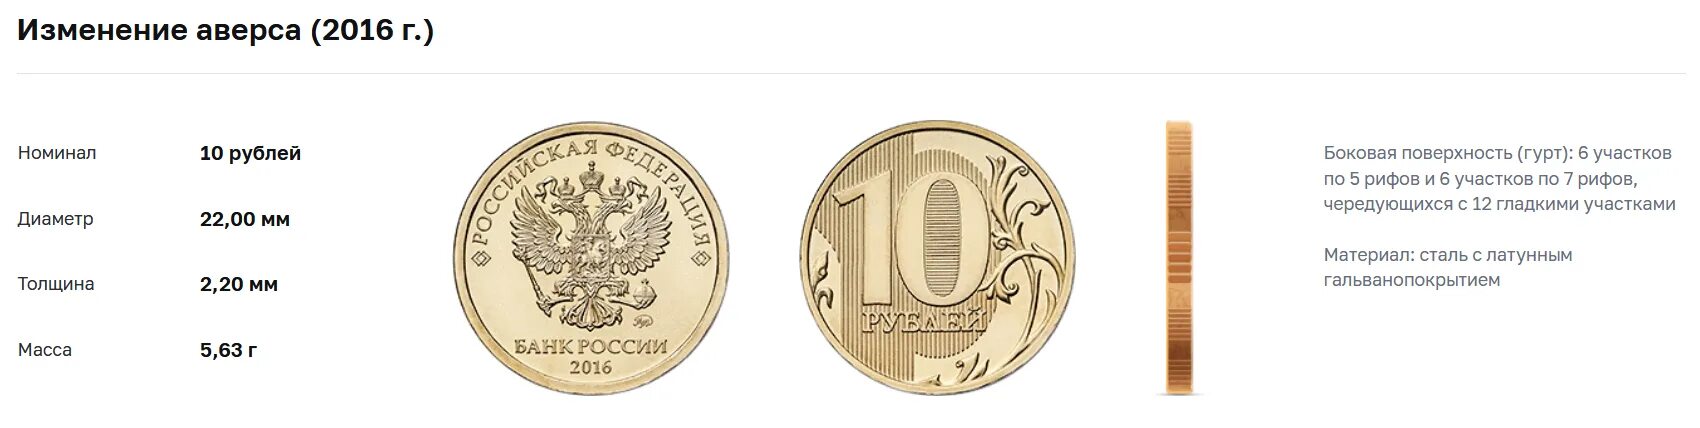 Алиса сколько 1000000 1000000. Монеты которые стоят 1000000. Российские монеты образца 2016 года. Самый дорогой монета в России 1000000$. Самая дорогая монета в России за 1000000.